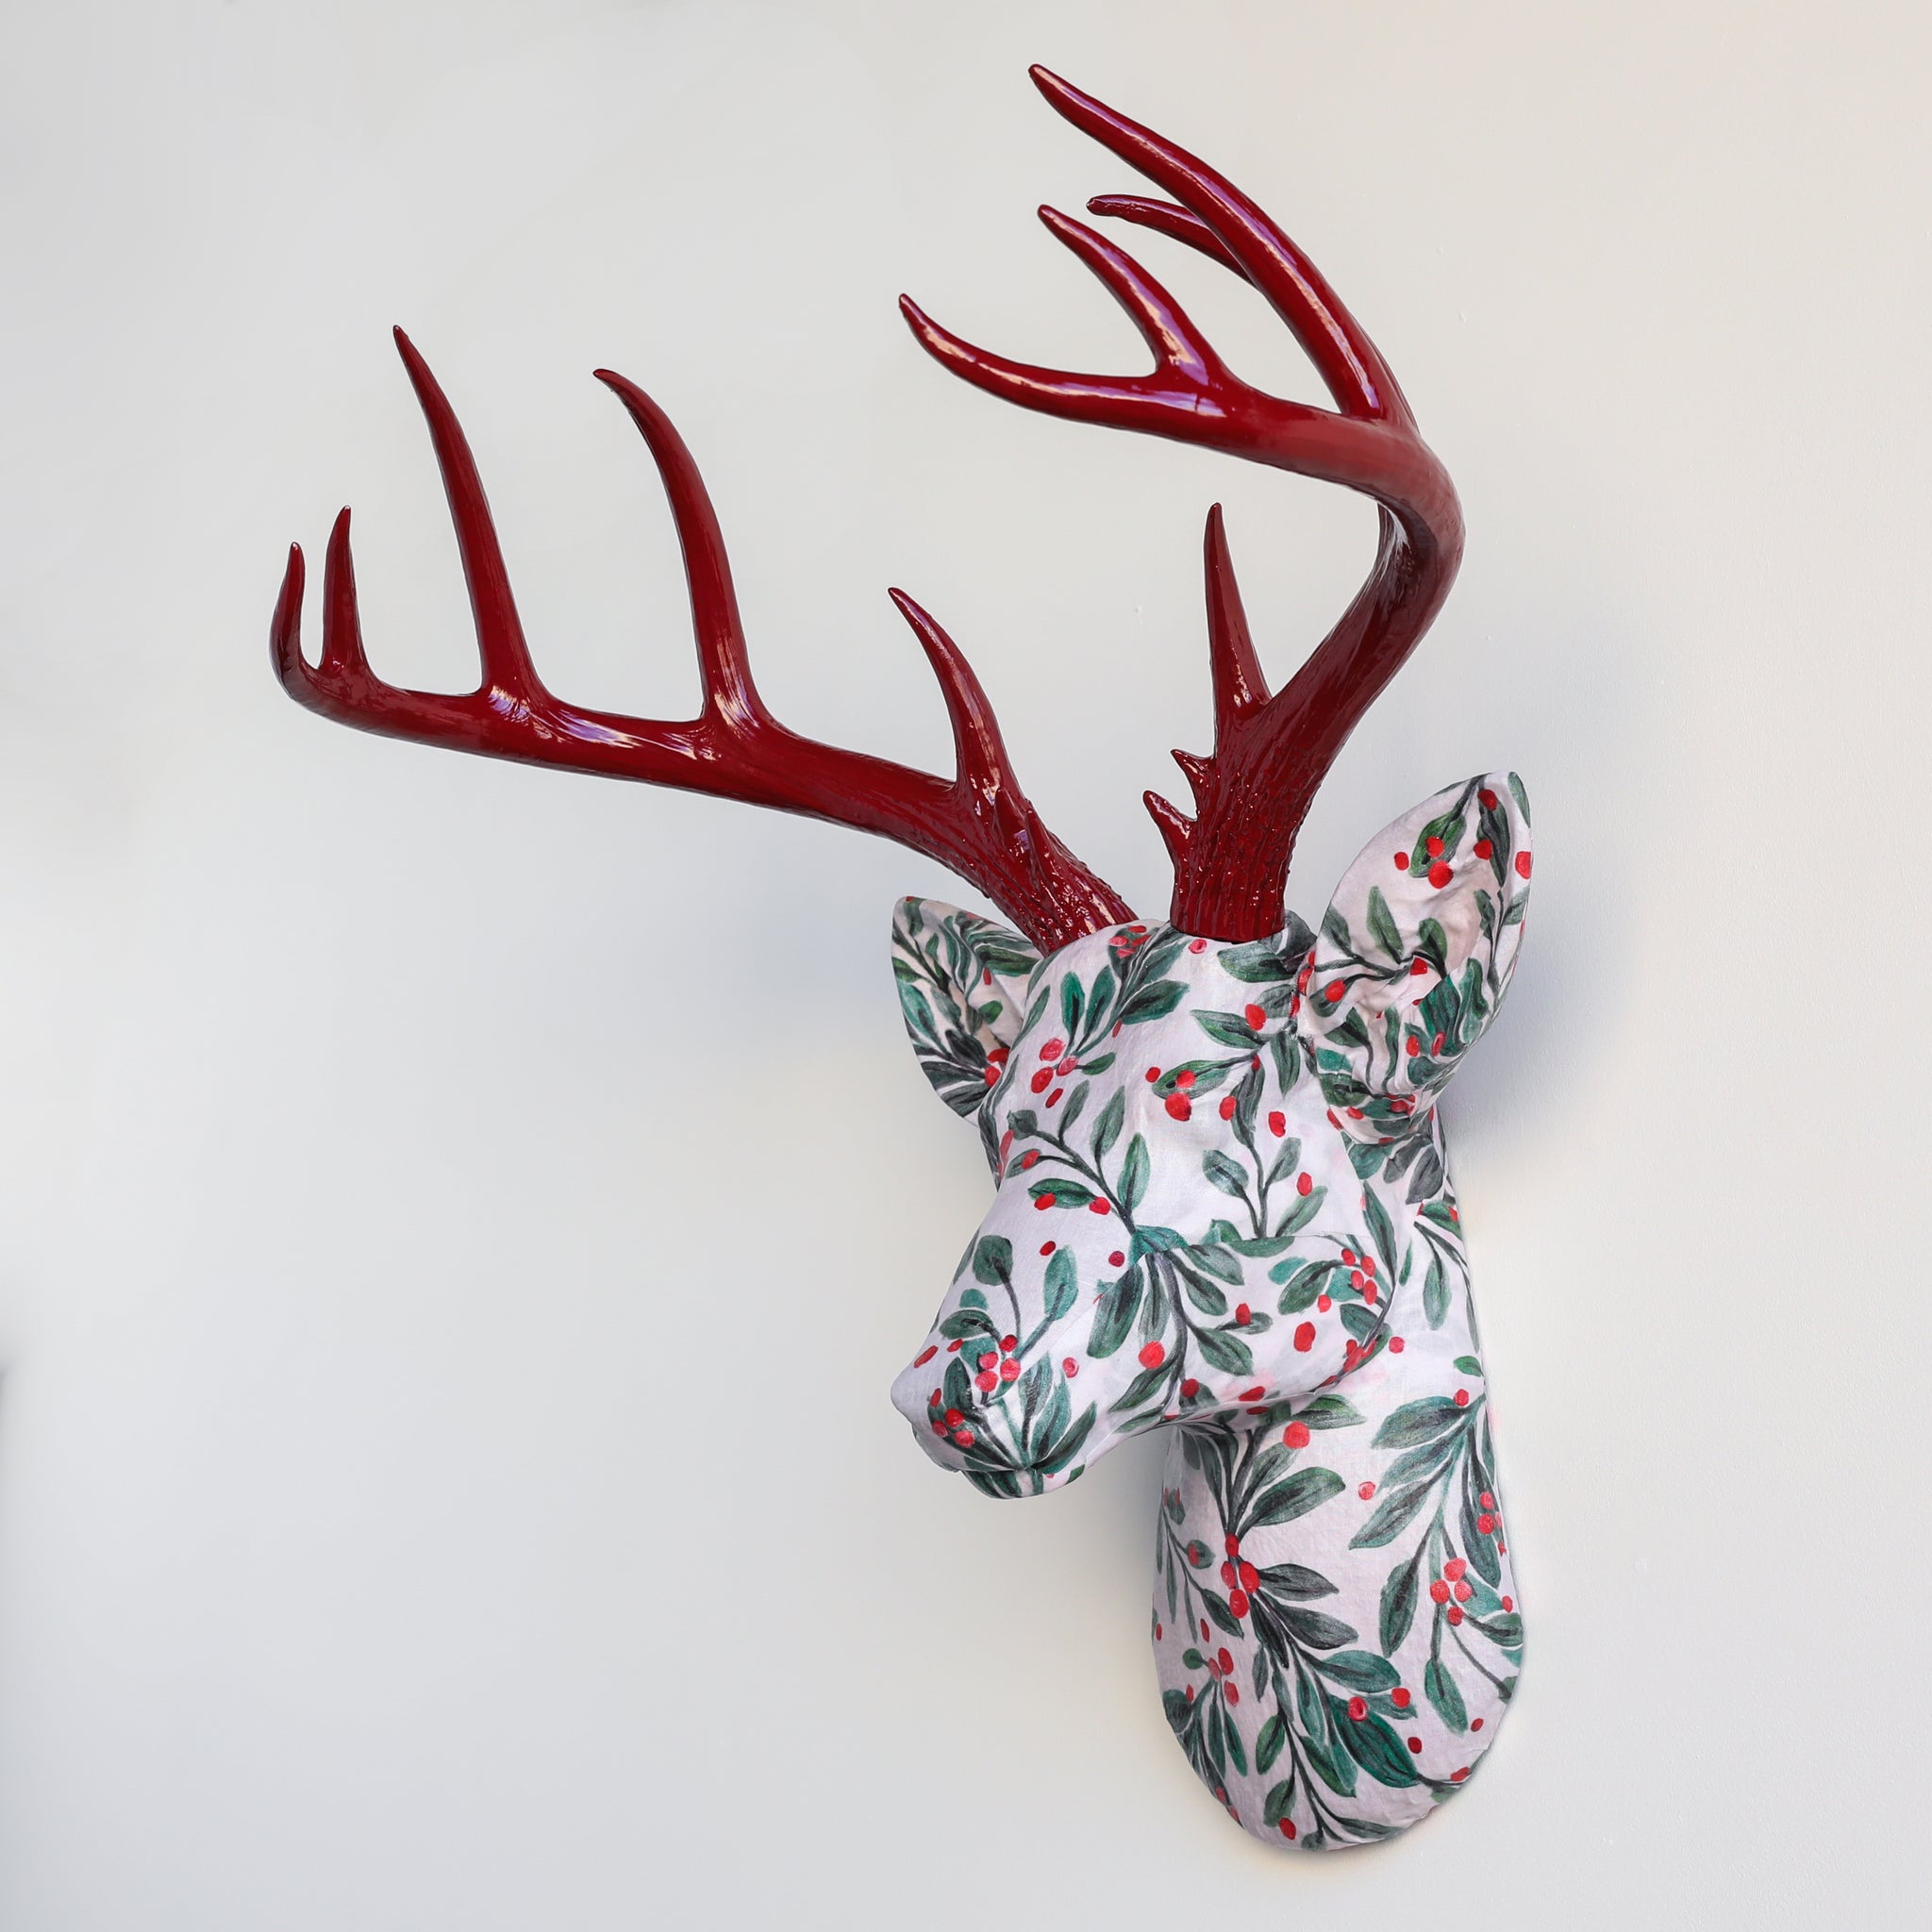 Fabric Deer Head - Christmas Mistletoe and Berries Fabric Deer Head